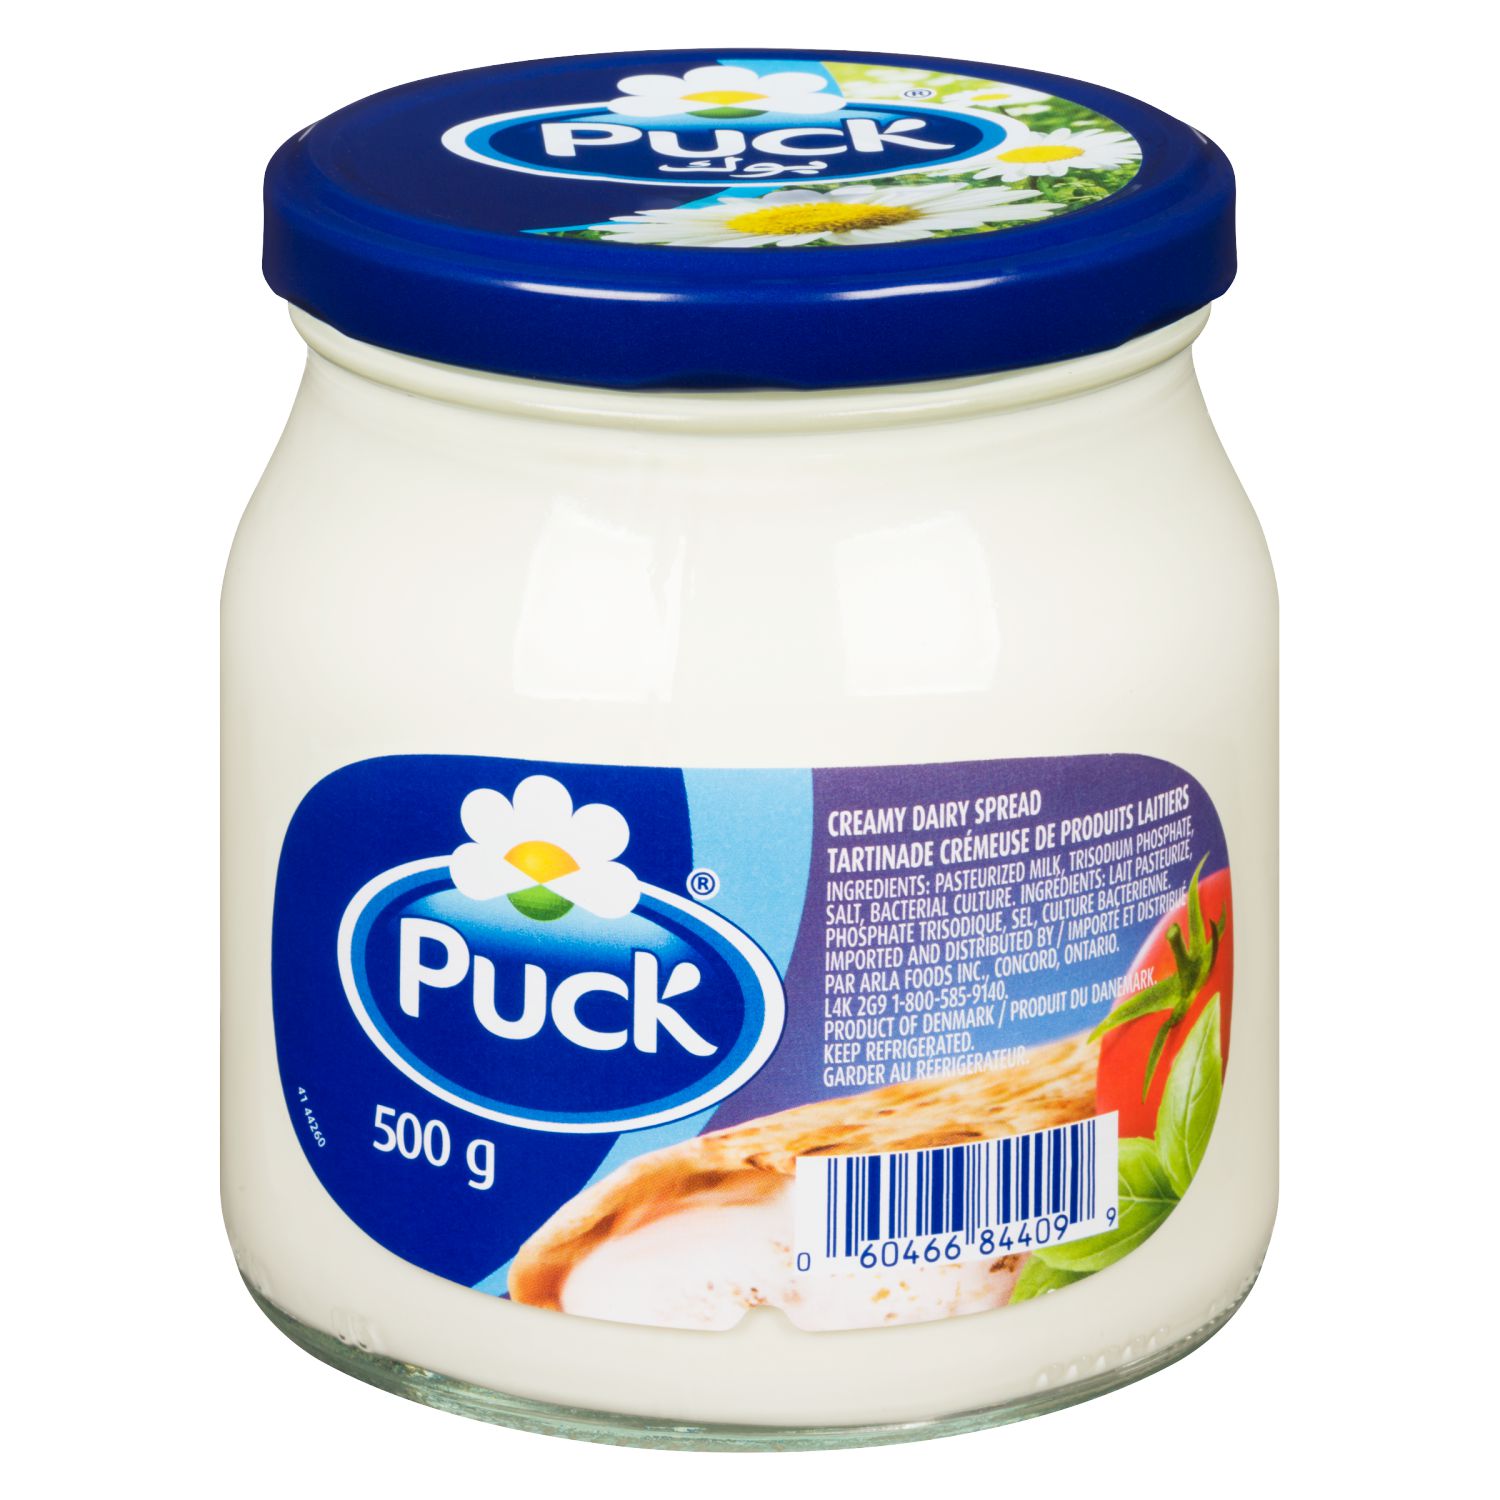 Puck Creamy Dairy Spread Walmart Canada 